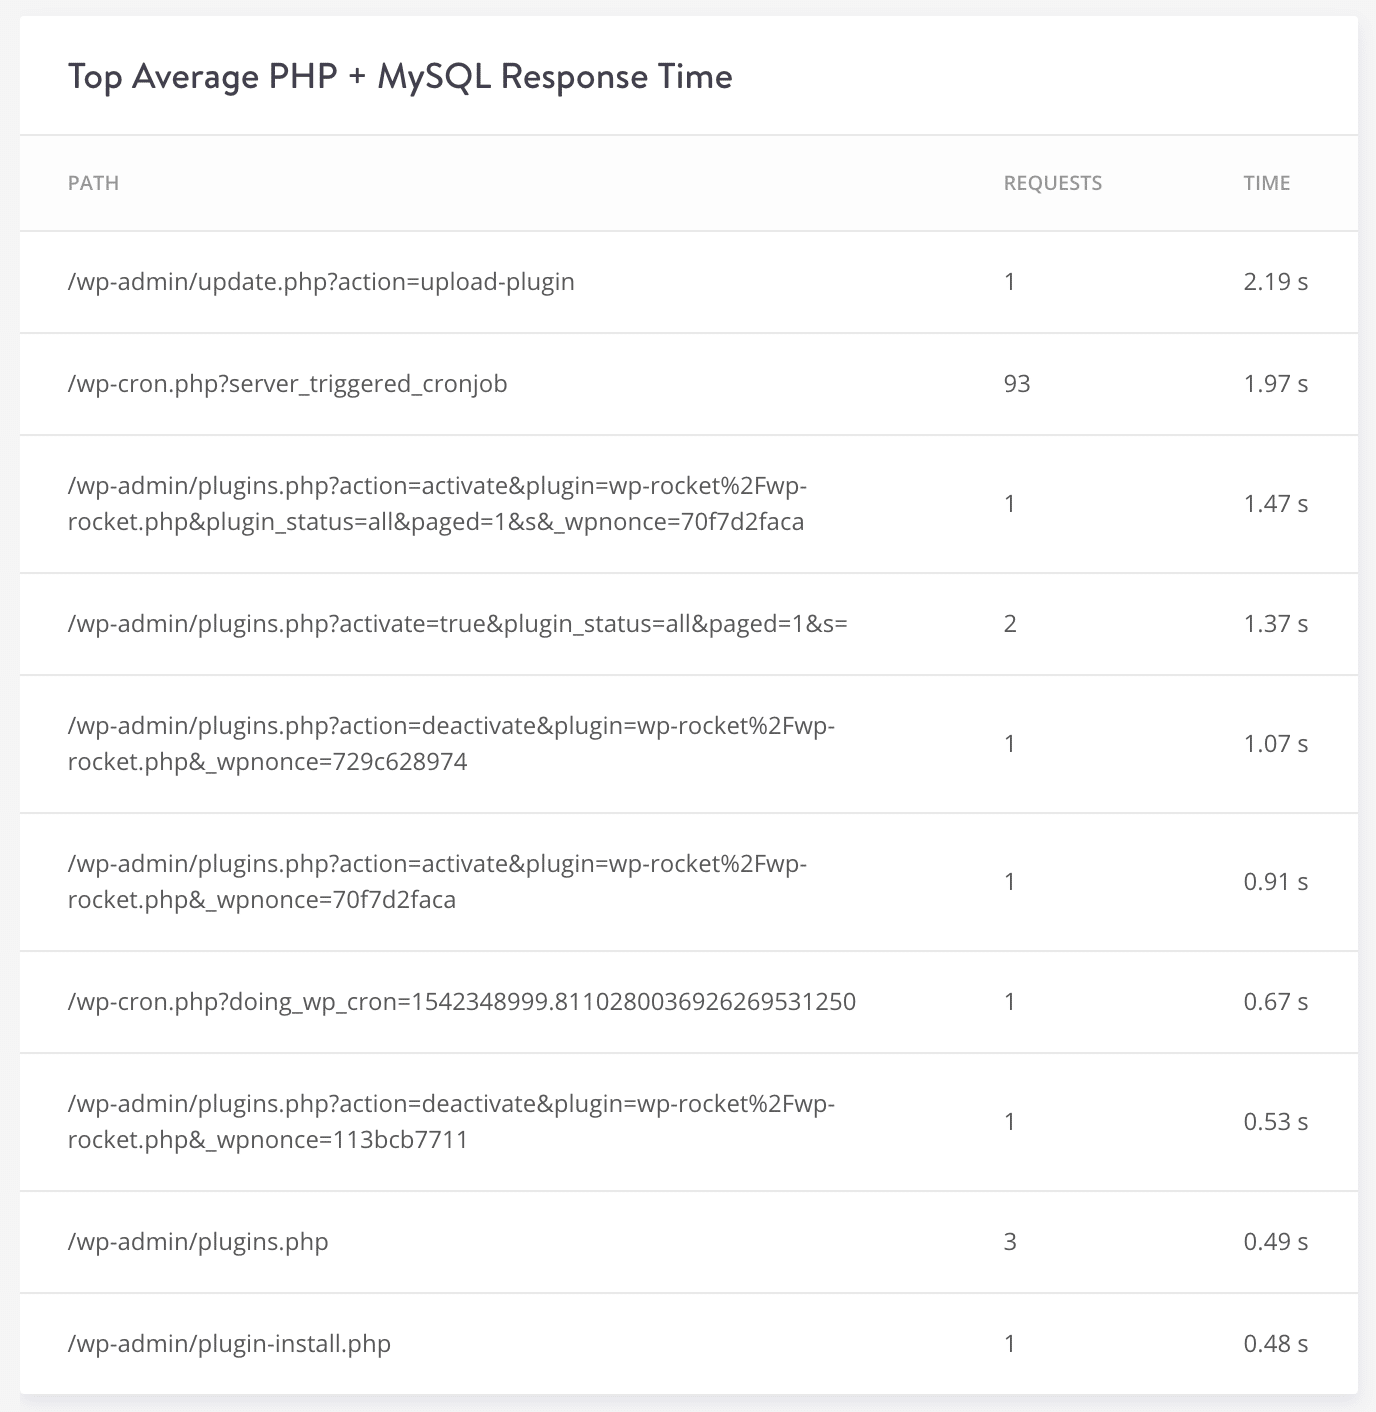 Högsta genomsnittliga PHP + MySQL-svarstid